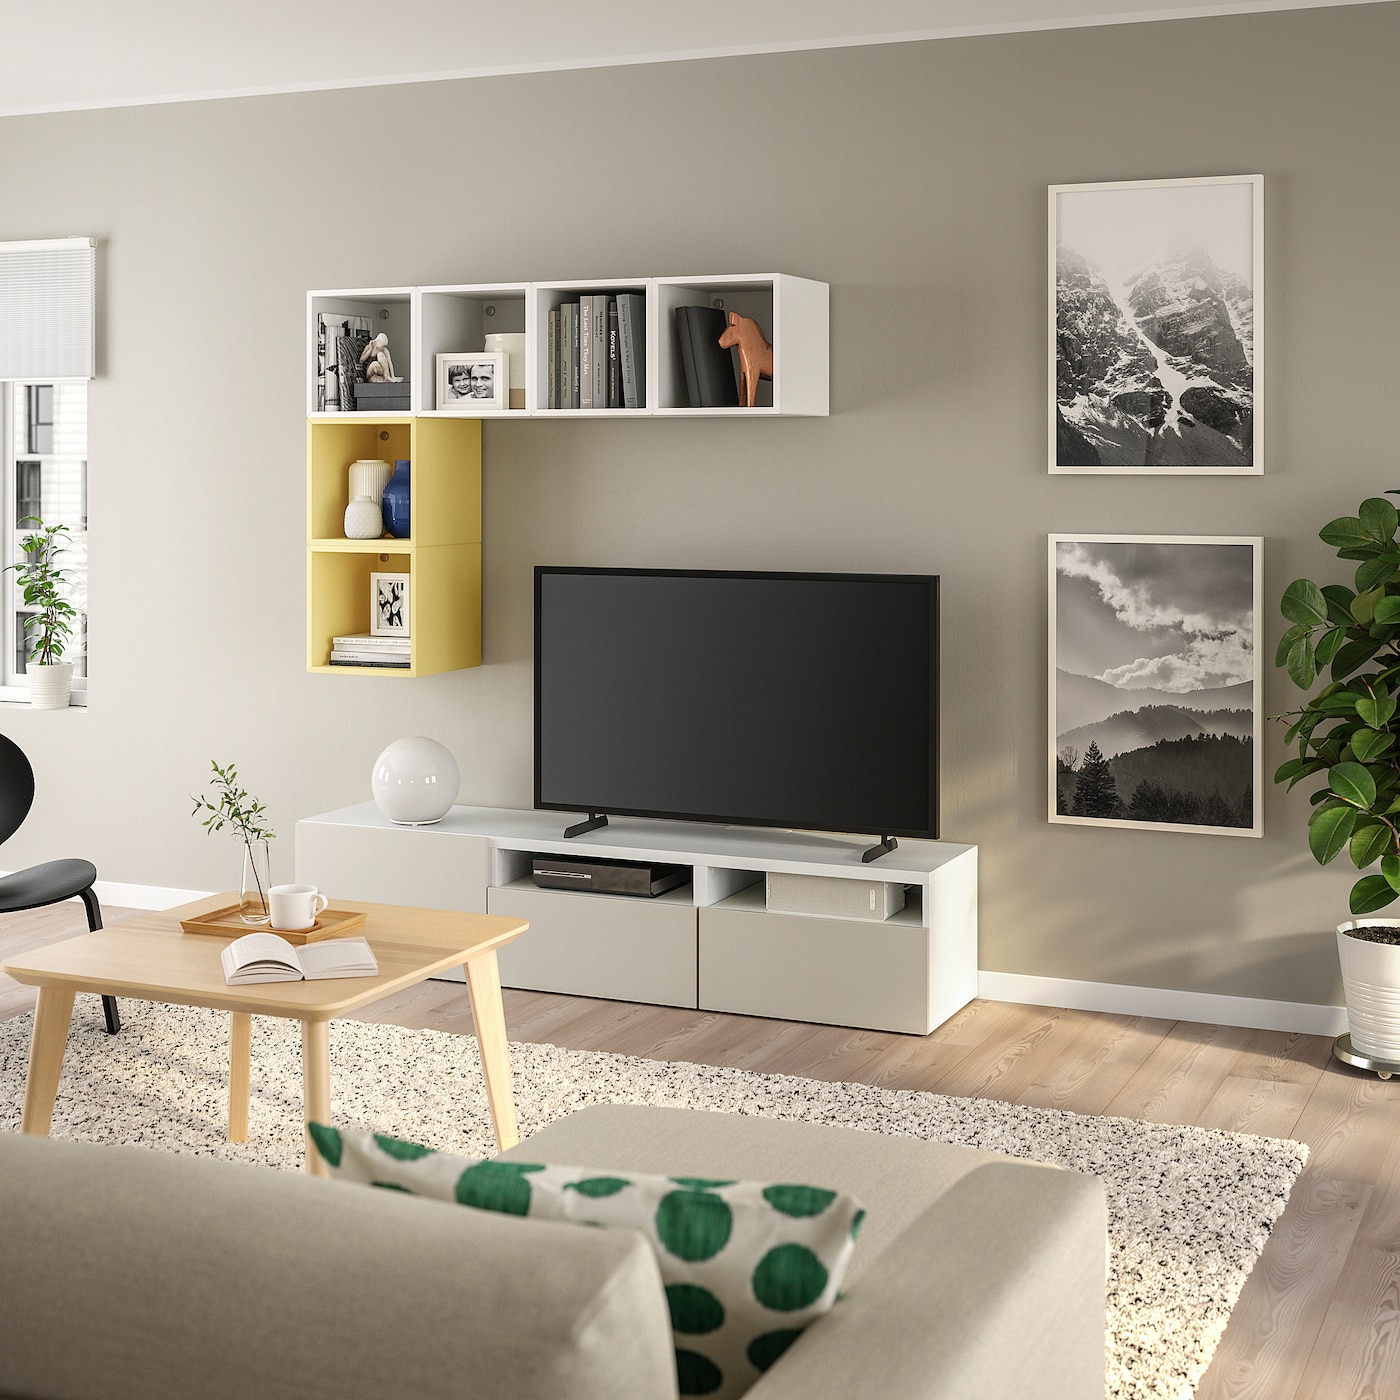 Комплект мебели д/гостиной  - IKEA BESTÅ/BESTA EKET, 180x42x170см, белый/желтый, БЕСТО ЭКЕТ ИКЕА